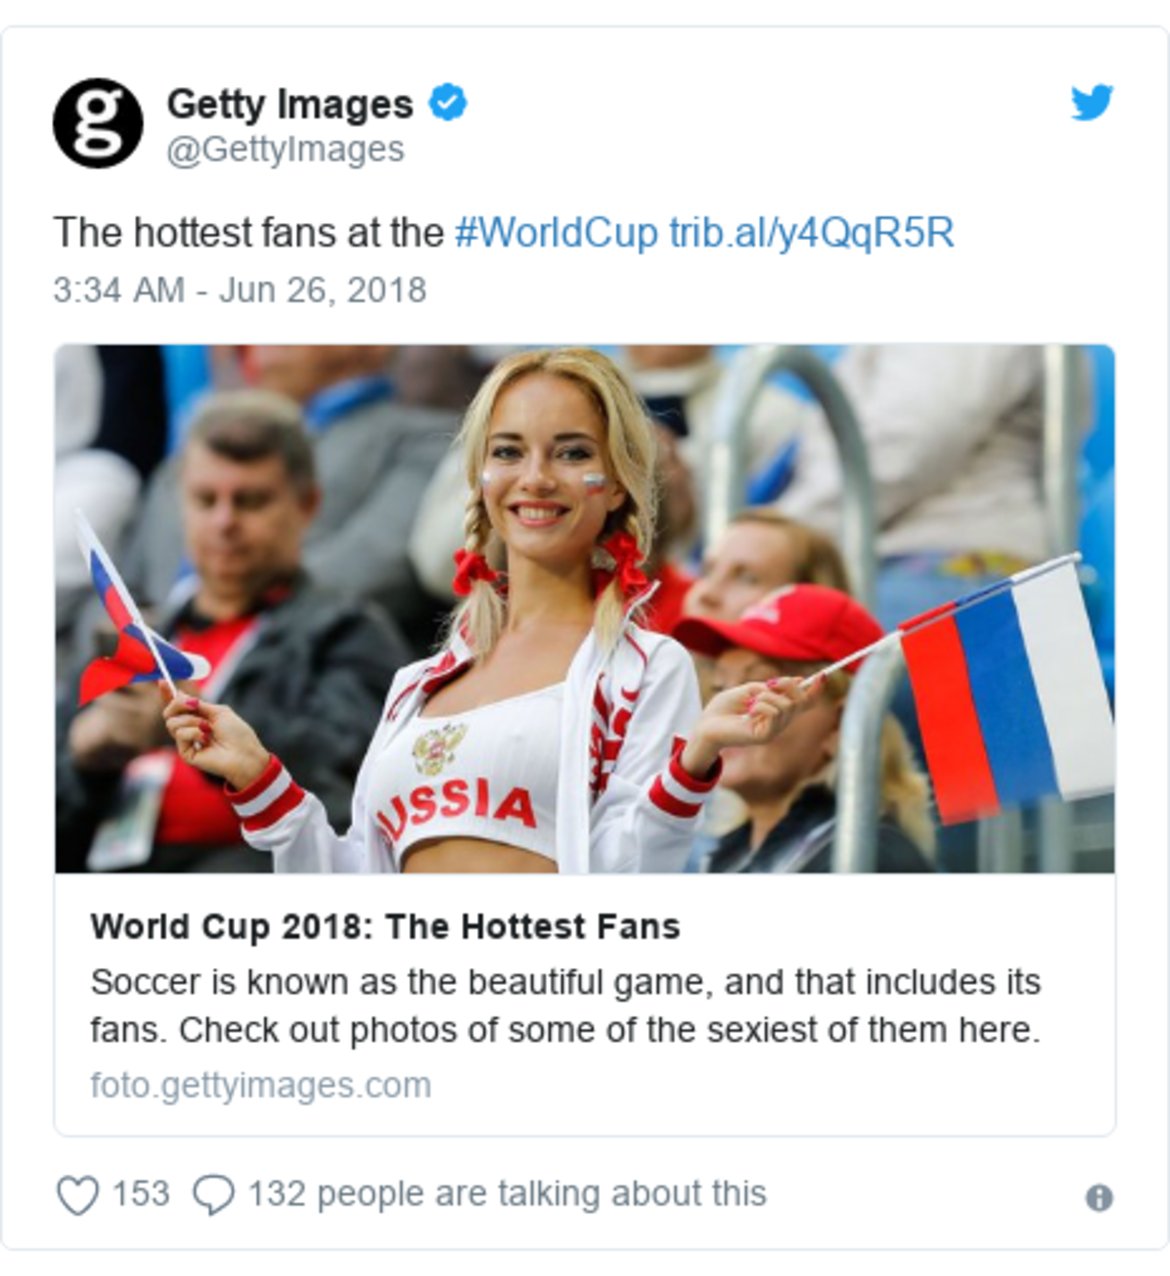 По време на първенството фотографската агенция Getty Images публикува галерия с най-секси фенките на Световното първенство, но бързо след това я изтри заради натиск и обвинения в дискриминация.

